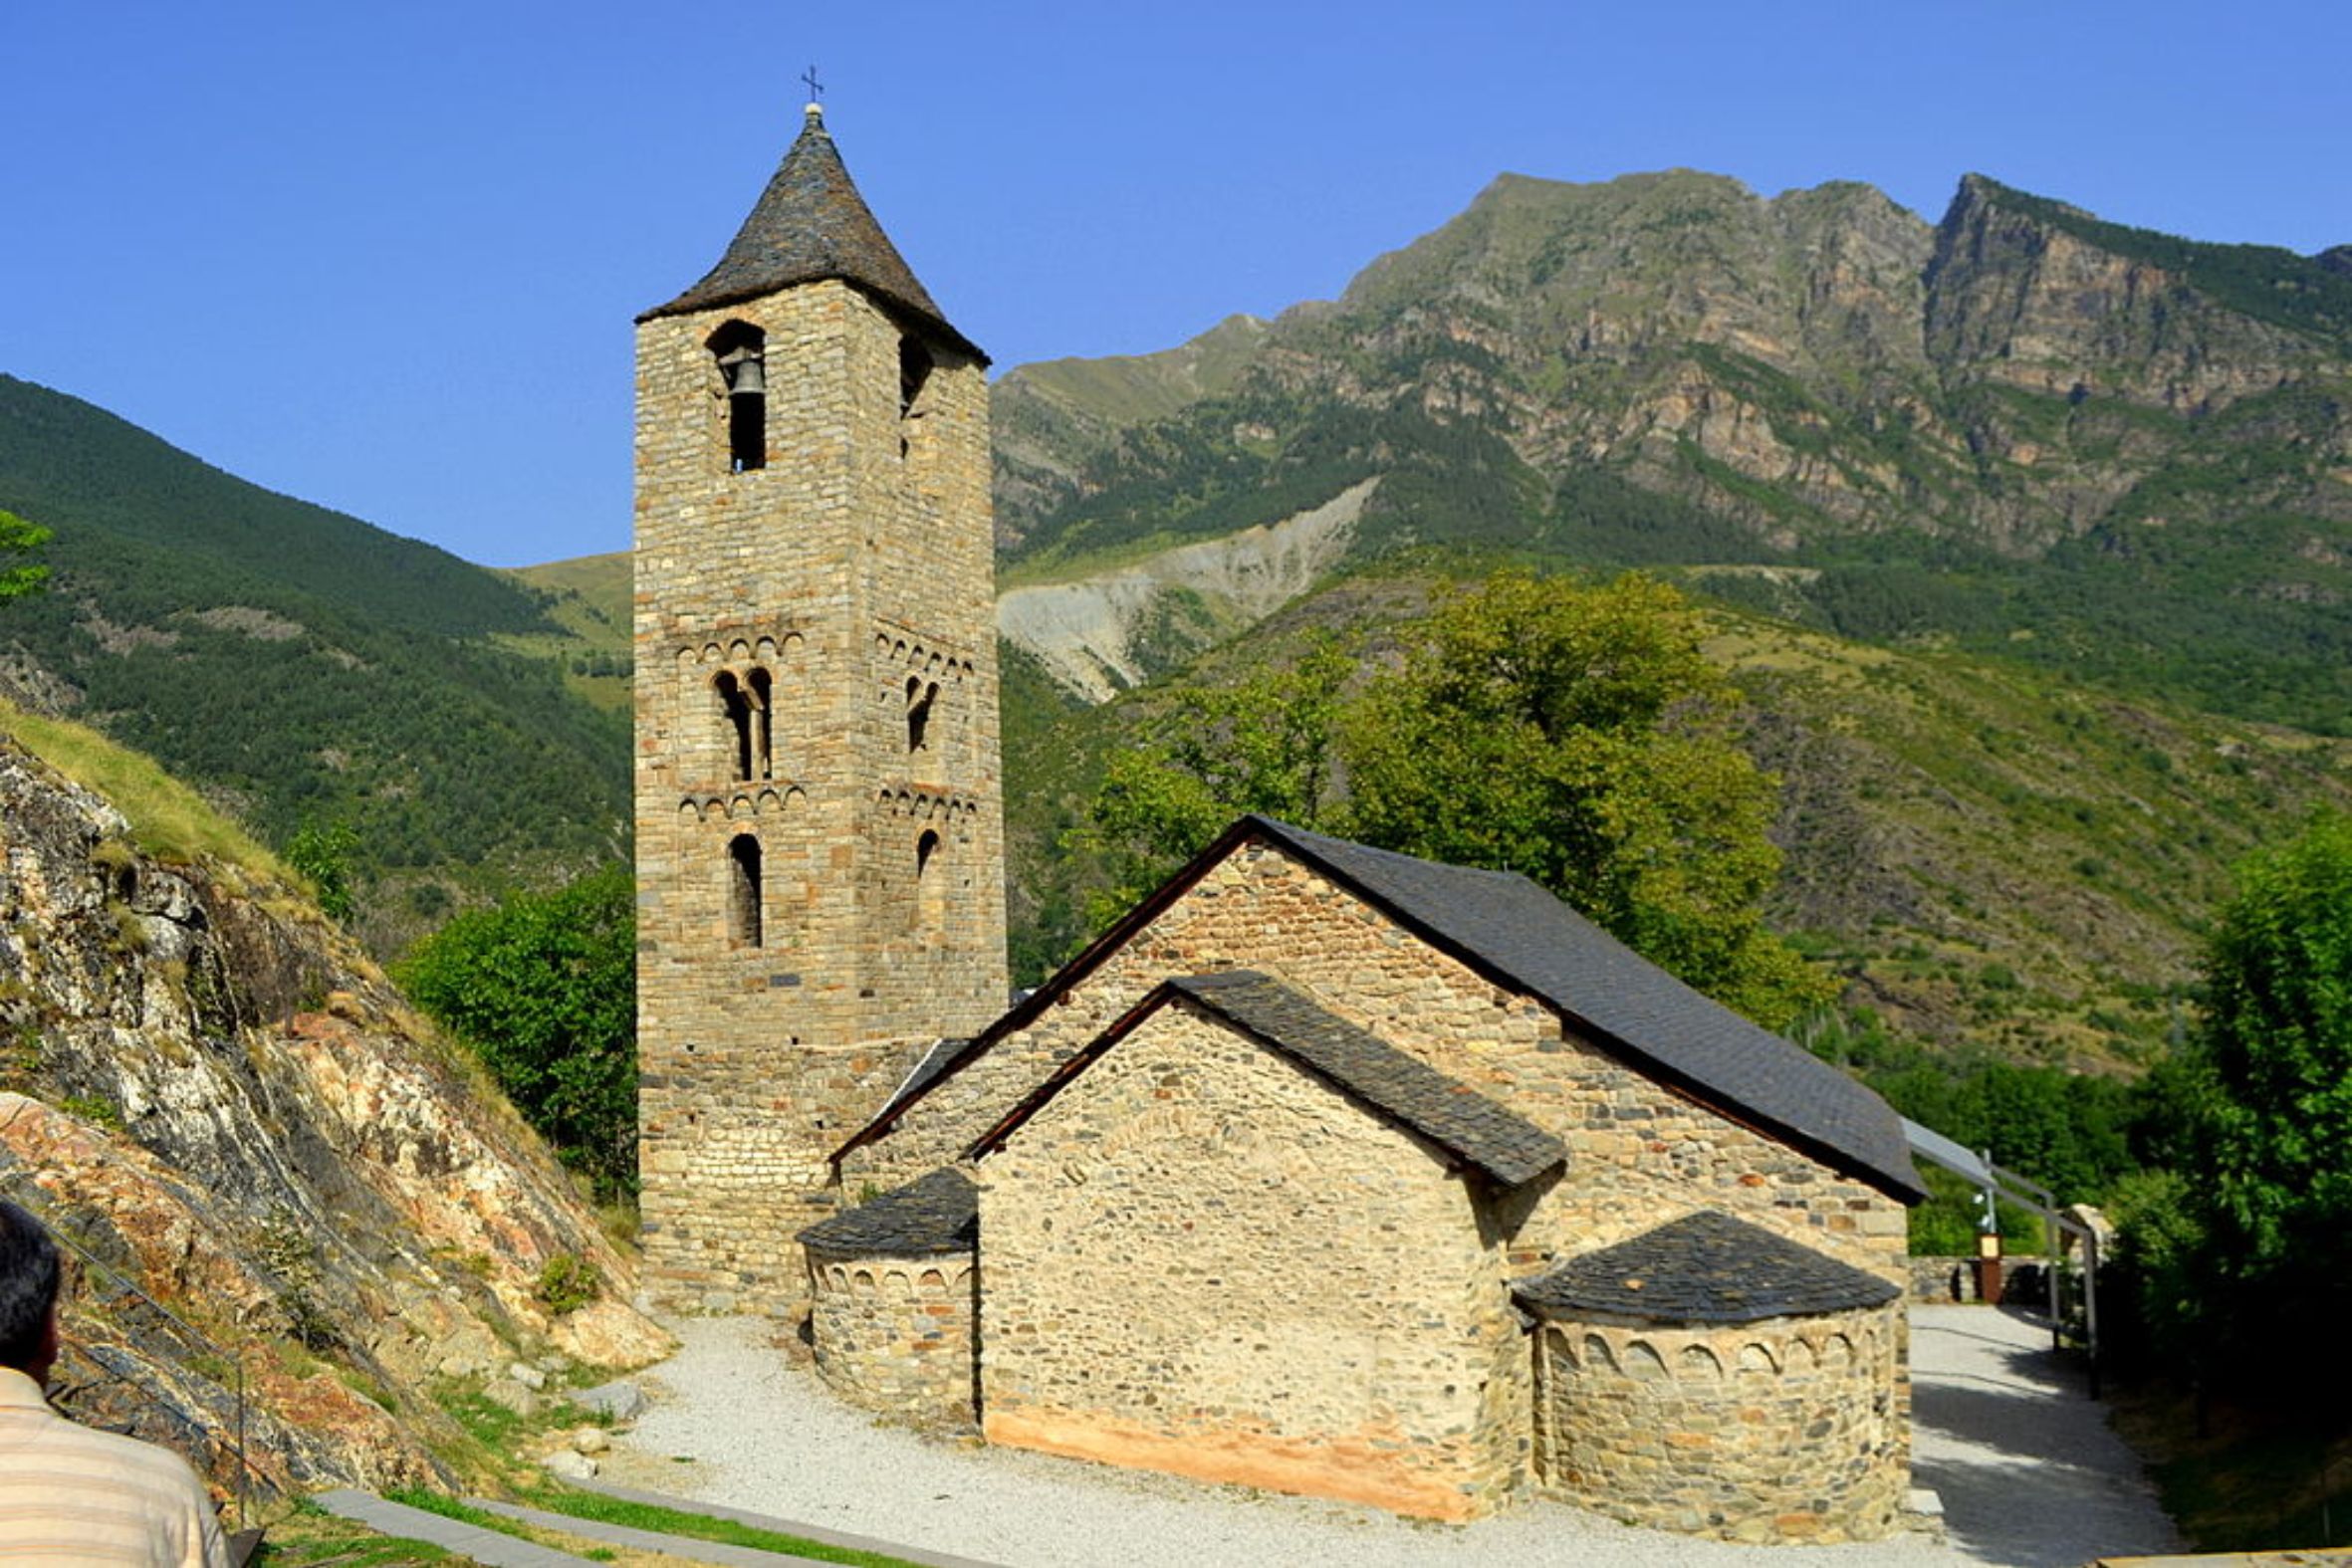 Vista de l'església de Sant Joan Boí (fotografia: Angela Llop / Wikimedia Commons).